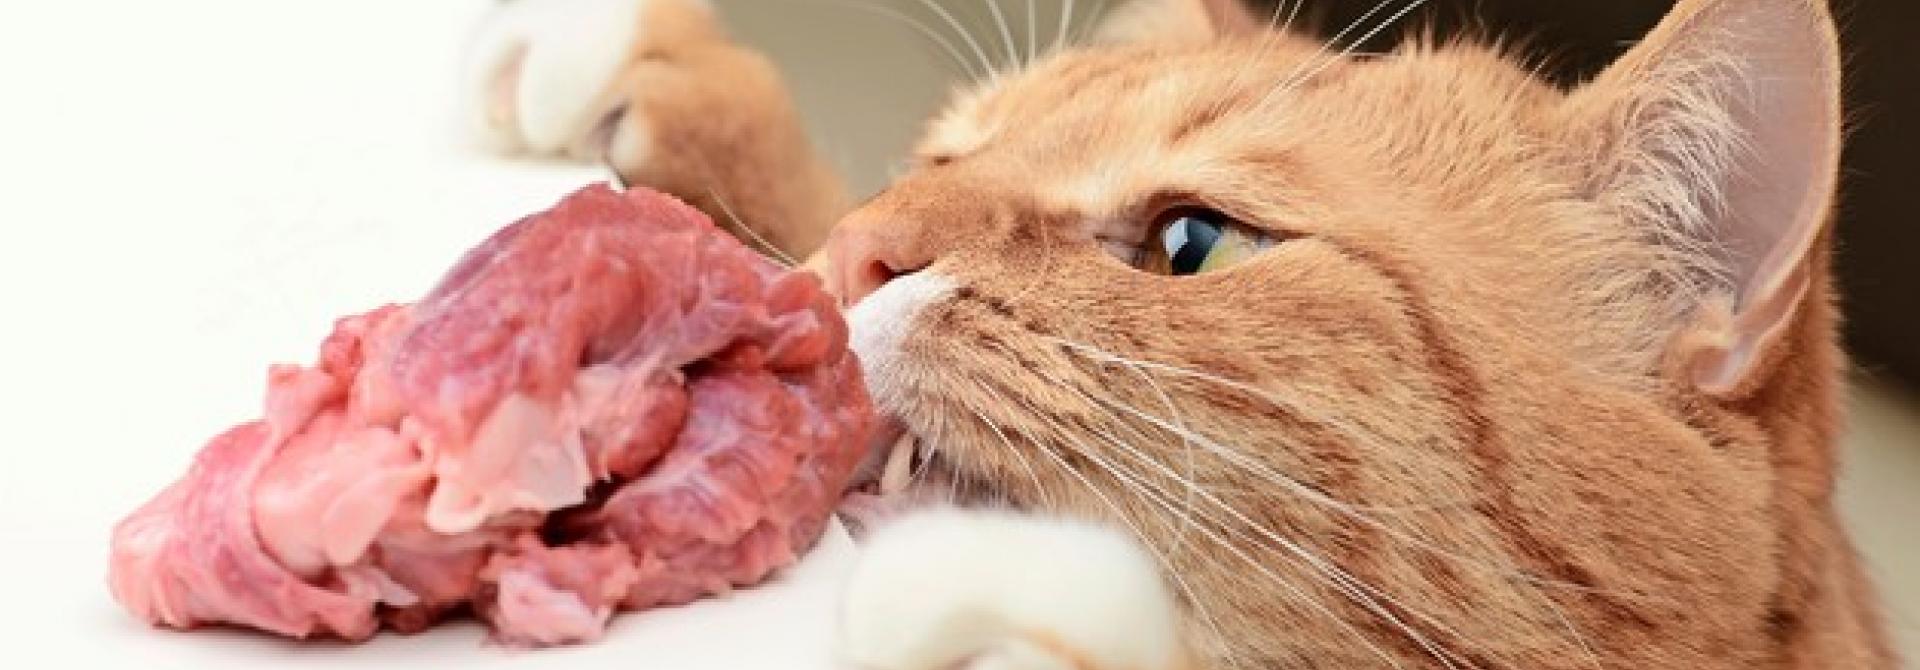 Katze isst rohes Fleisch